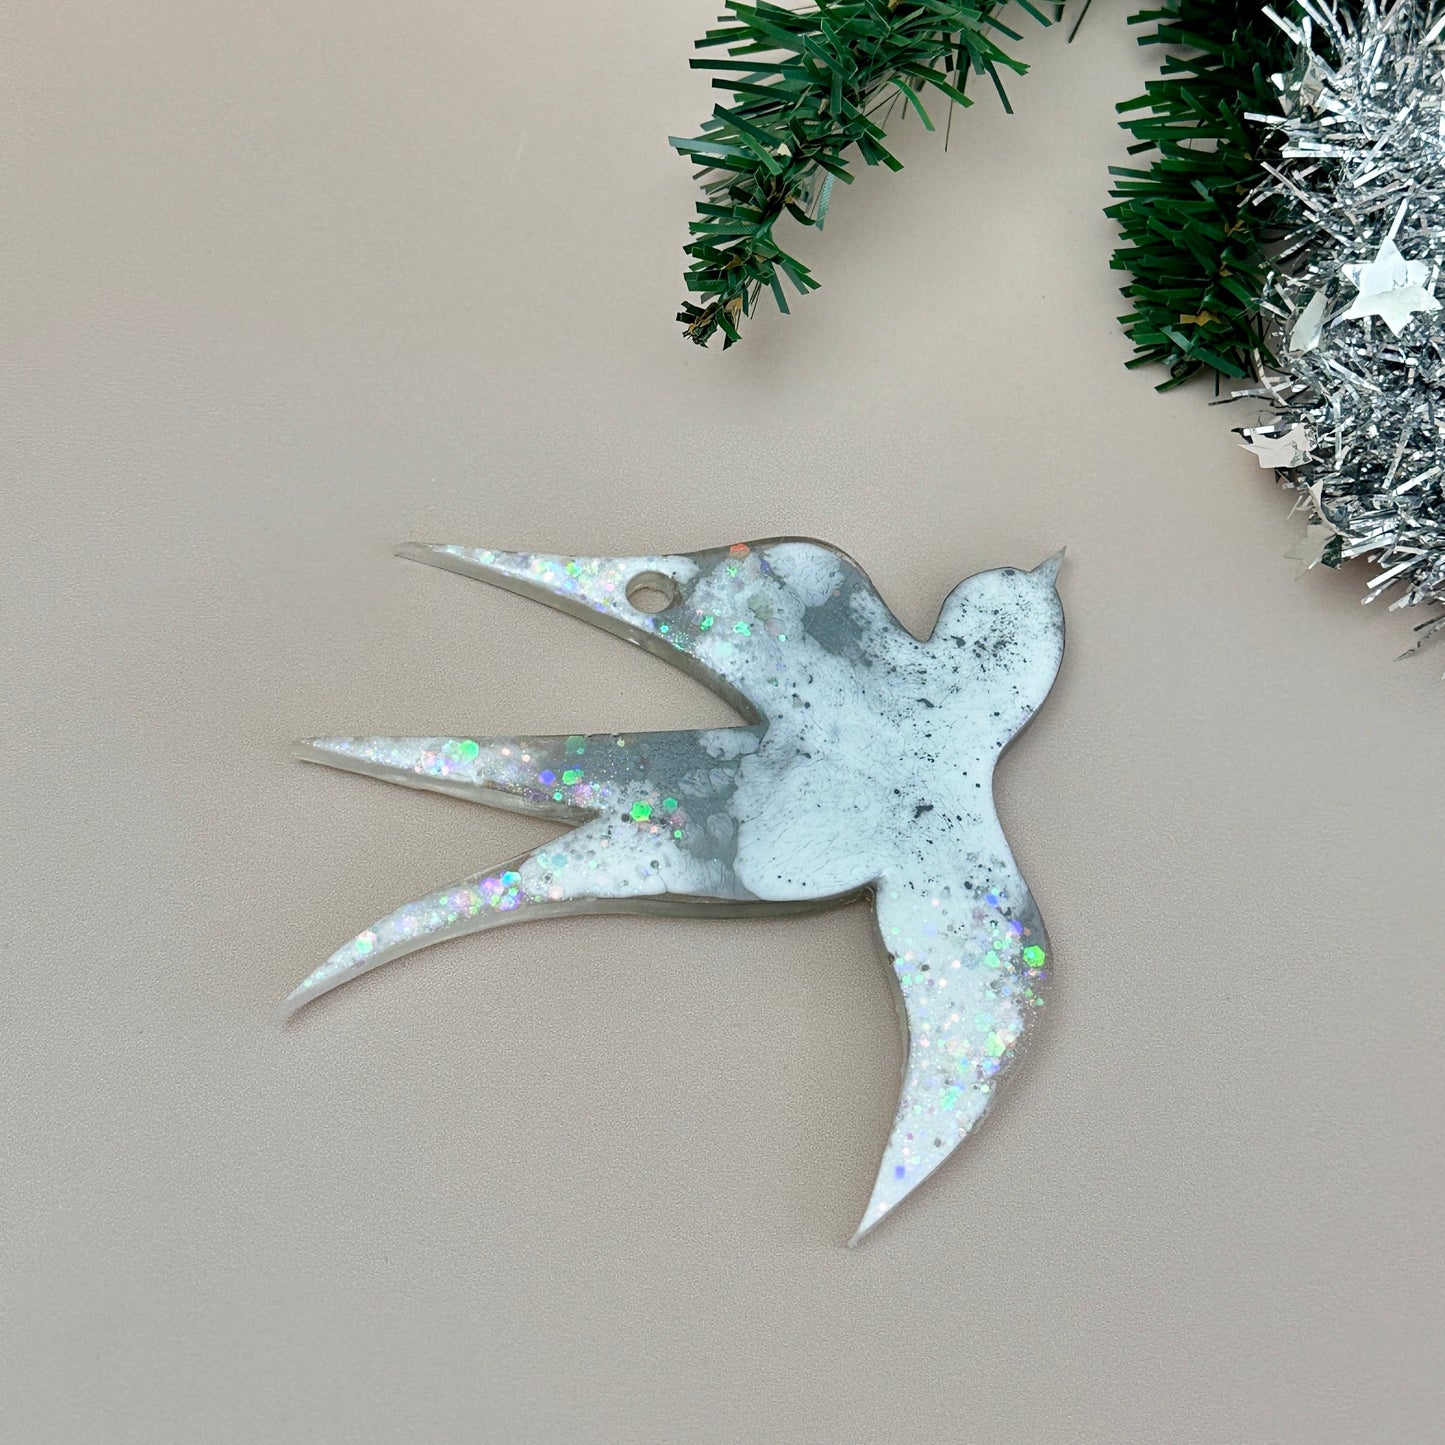 Schwalbenförmiger Weihnachtsbaumschmuck: Werten Sie Ihre Kunstharzkunst mit einer Silikonform auf